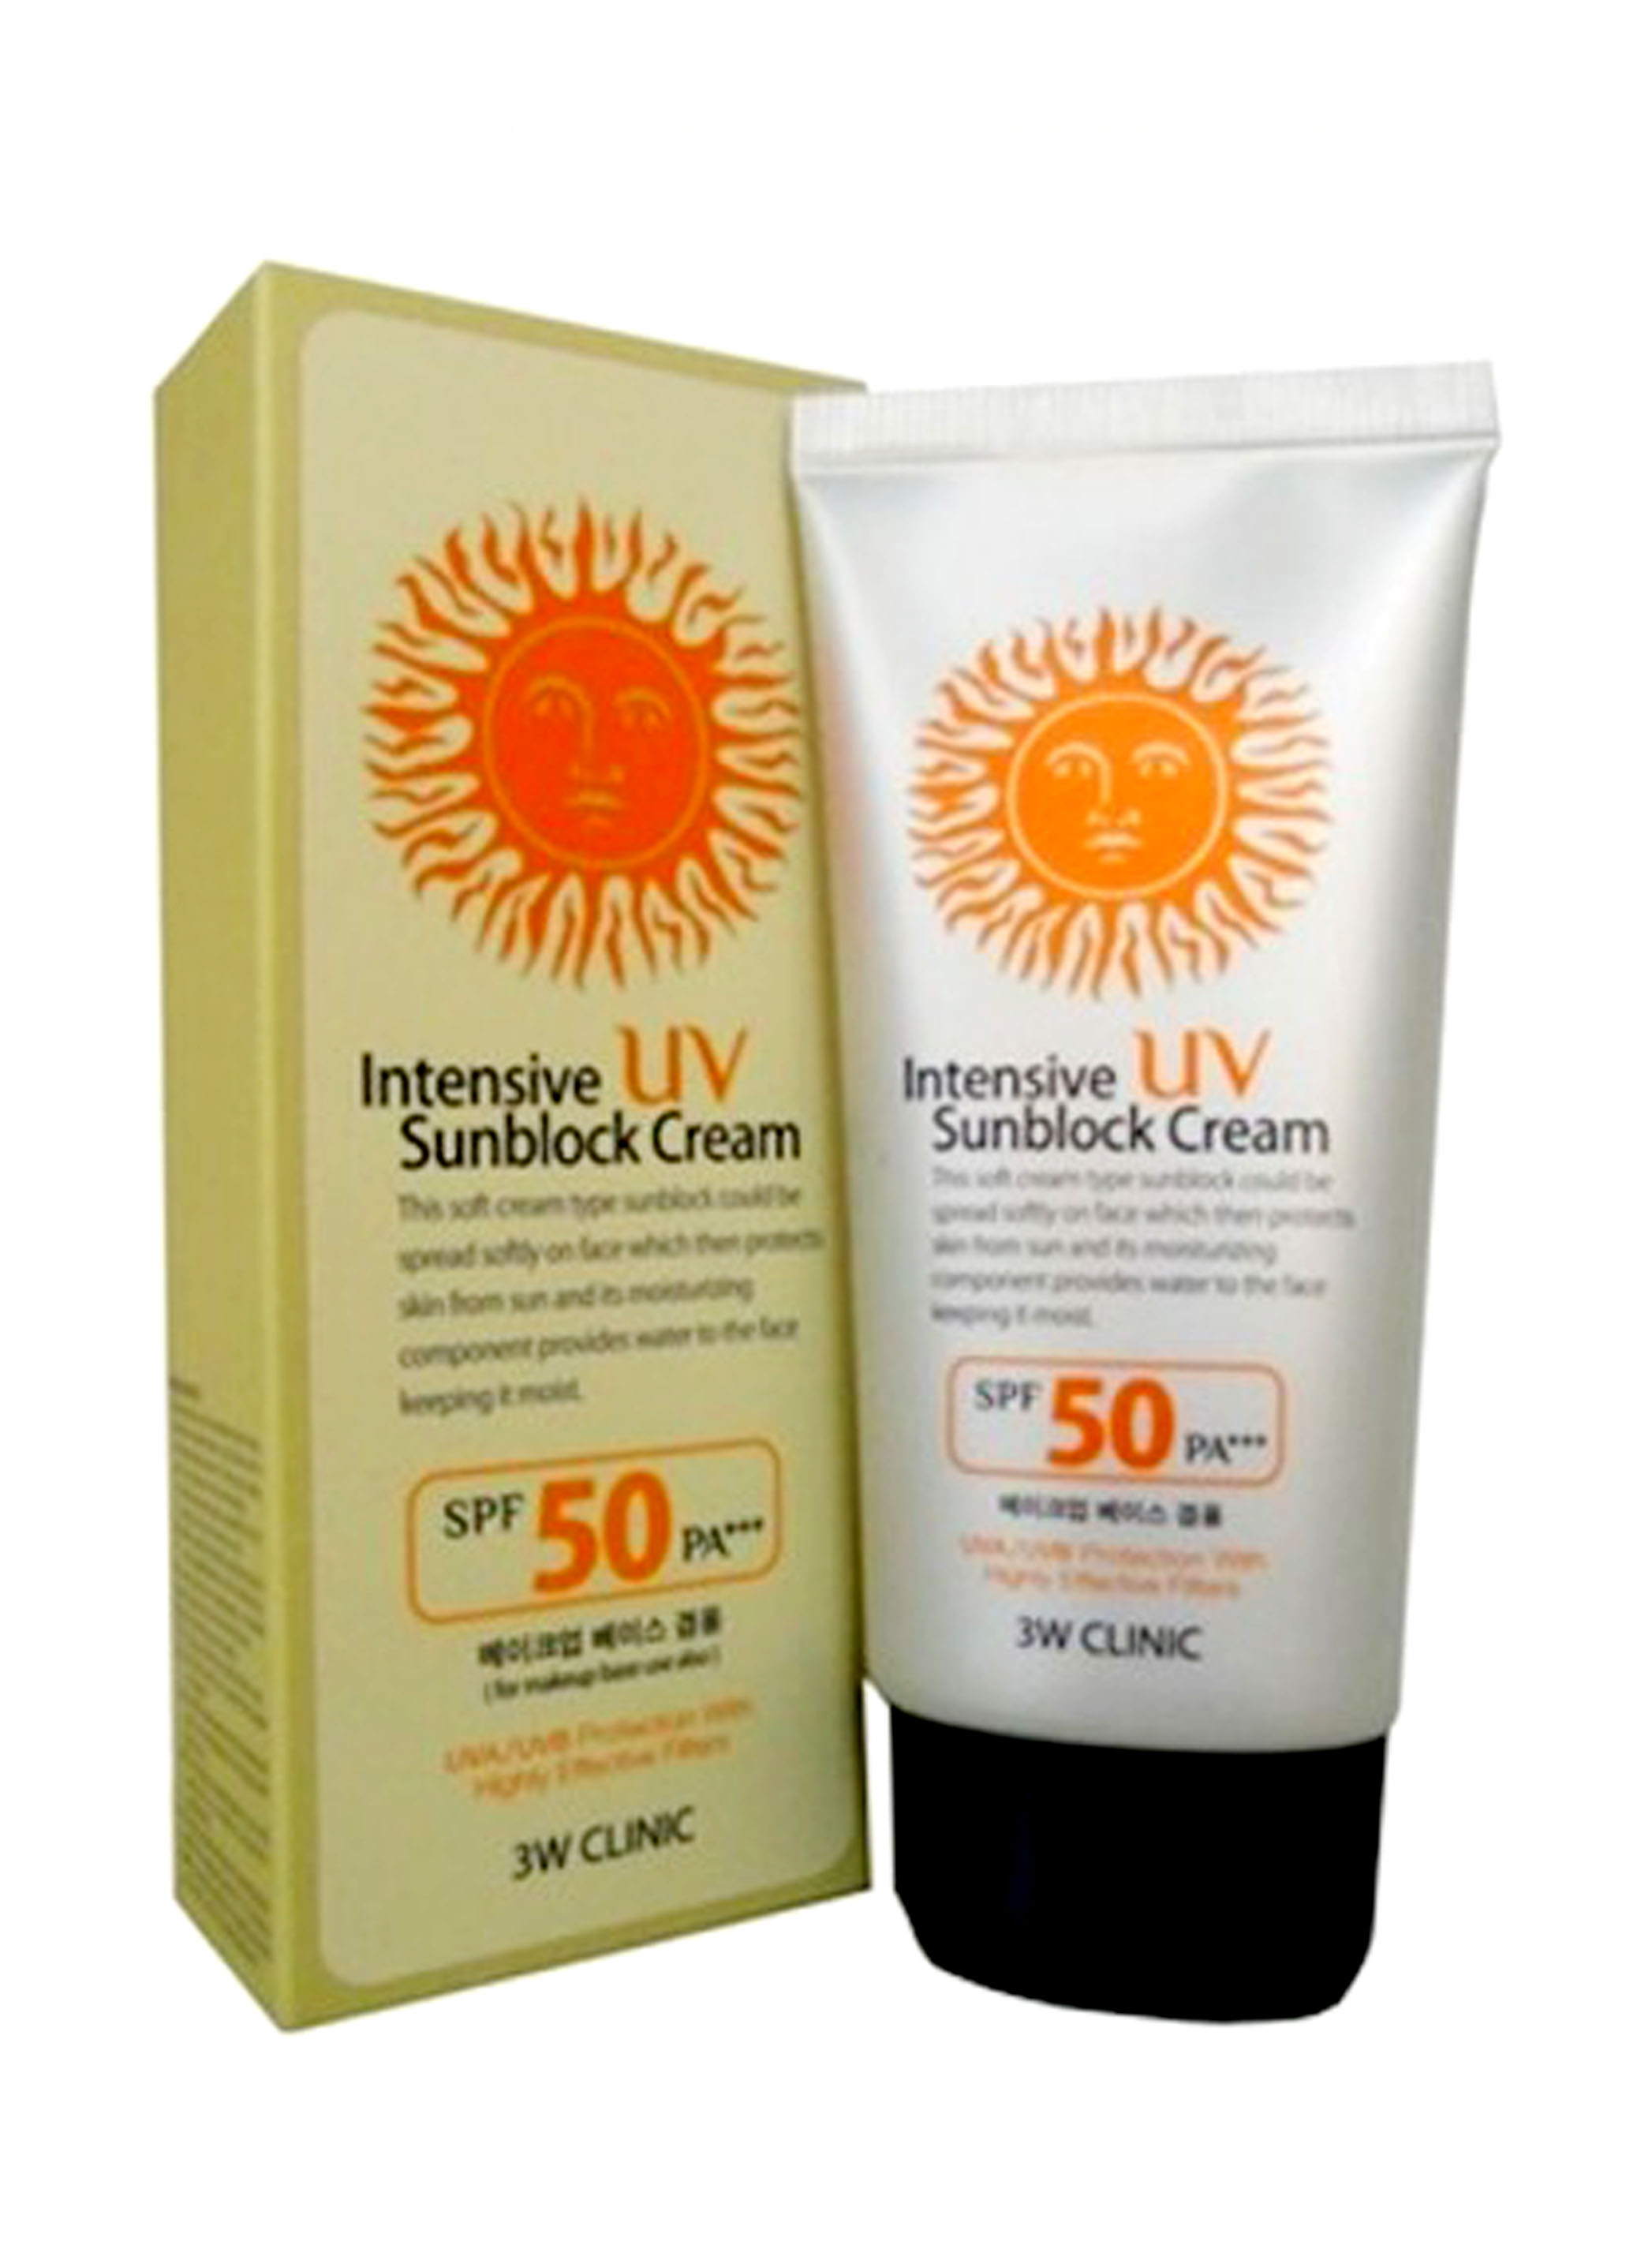 Kem chống nắng 3w Clinic Intensive UV Sunblock Cream SPF 50 Pa+++  Hàn Quốc